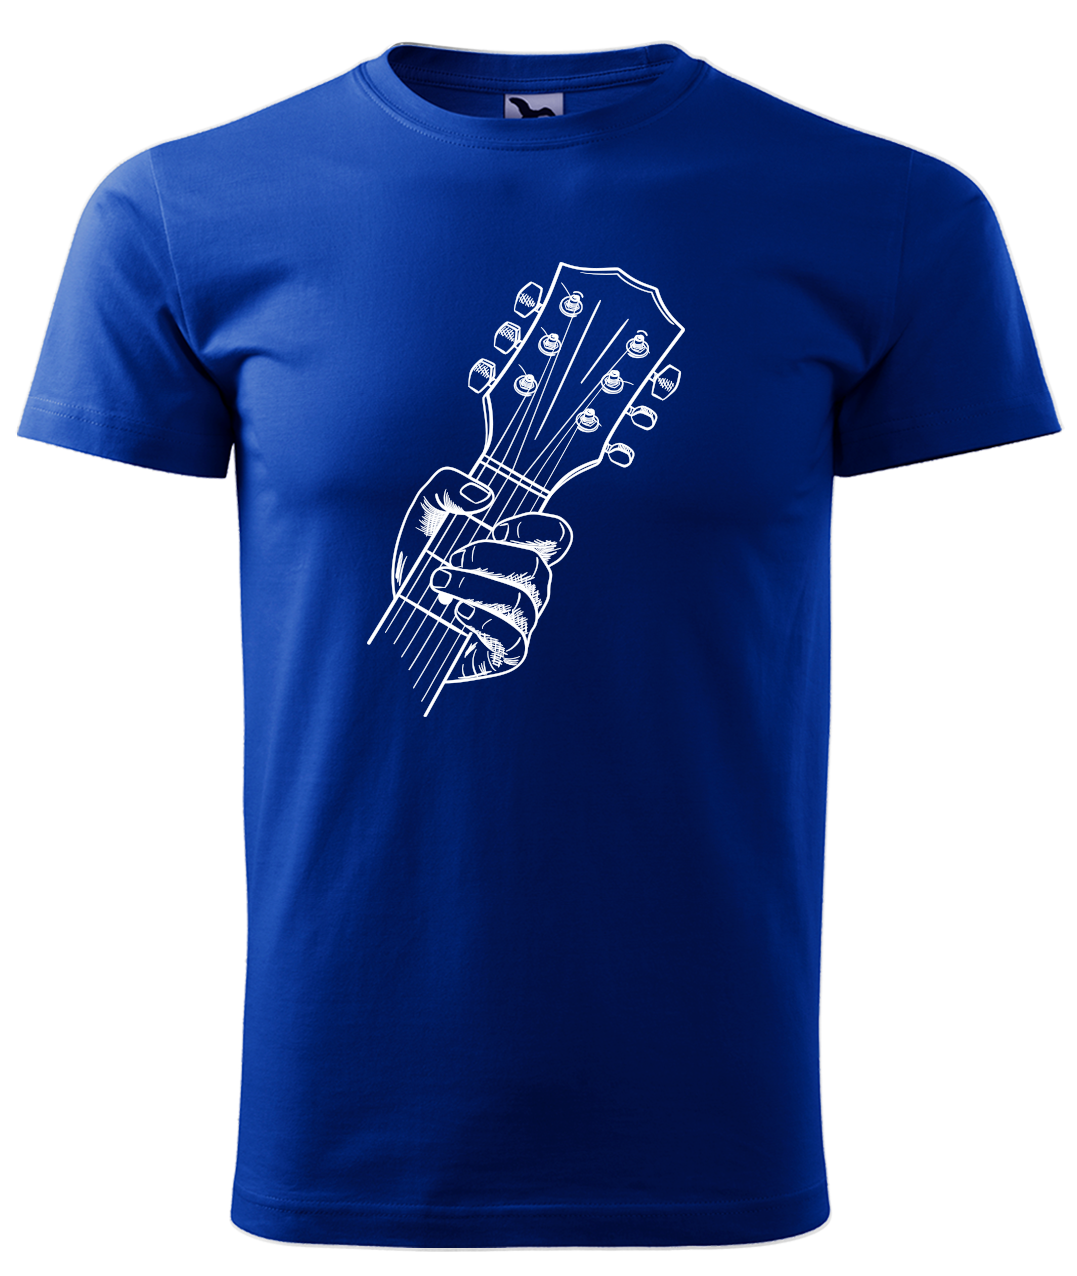 Dětské tričko s kytarou - Hlava kytary Velikost: 4 roky / 110 cm, Barva: Královská modrá (05)